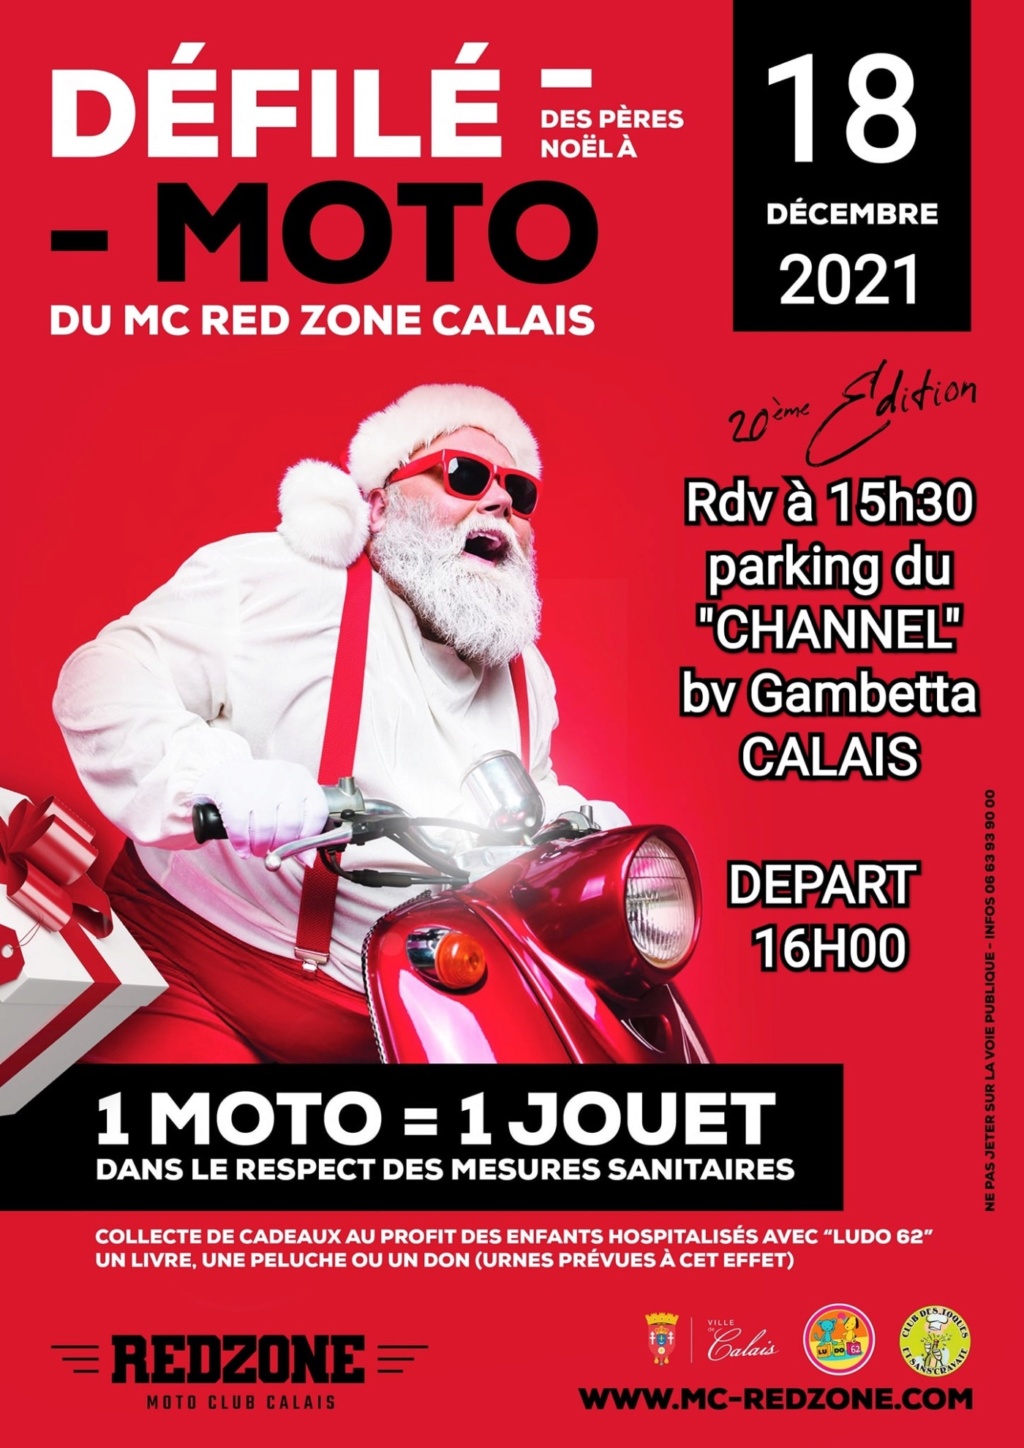 MANIFESTATION - Défilé des Pères Noel a  Moto - 18 Décembre 2021 -Calais  619fbc10